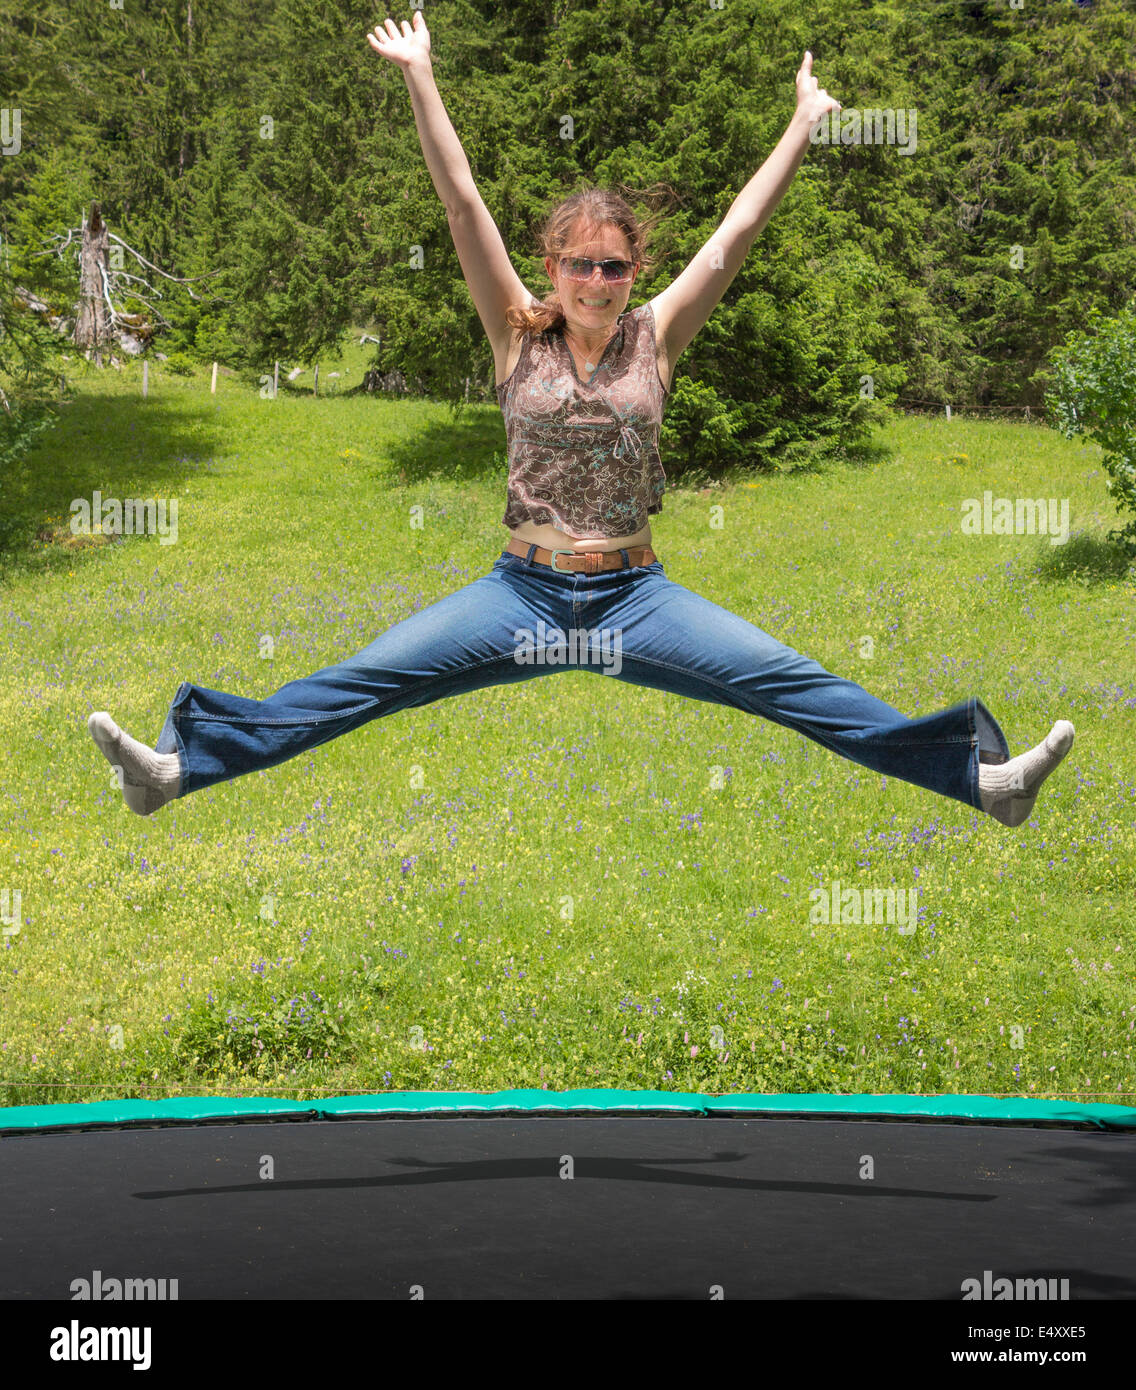 Eine junge Frau auf einem Trampolin in einer Berglandschaft mit Freude hüpfen Stockfoto